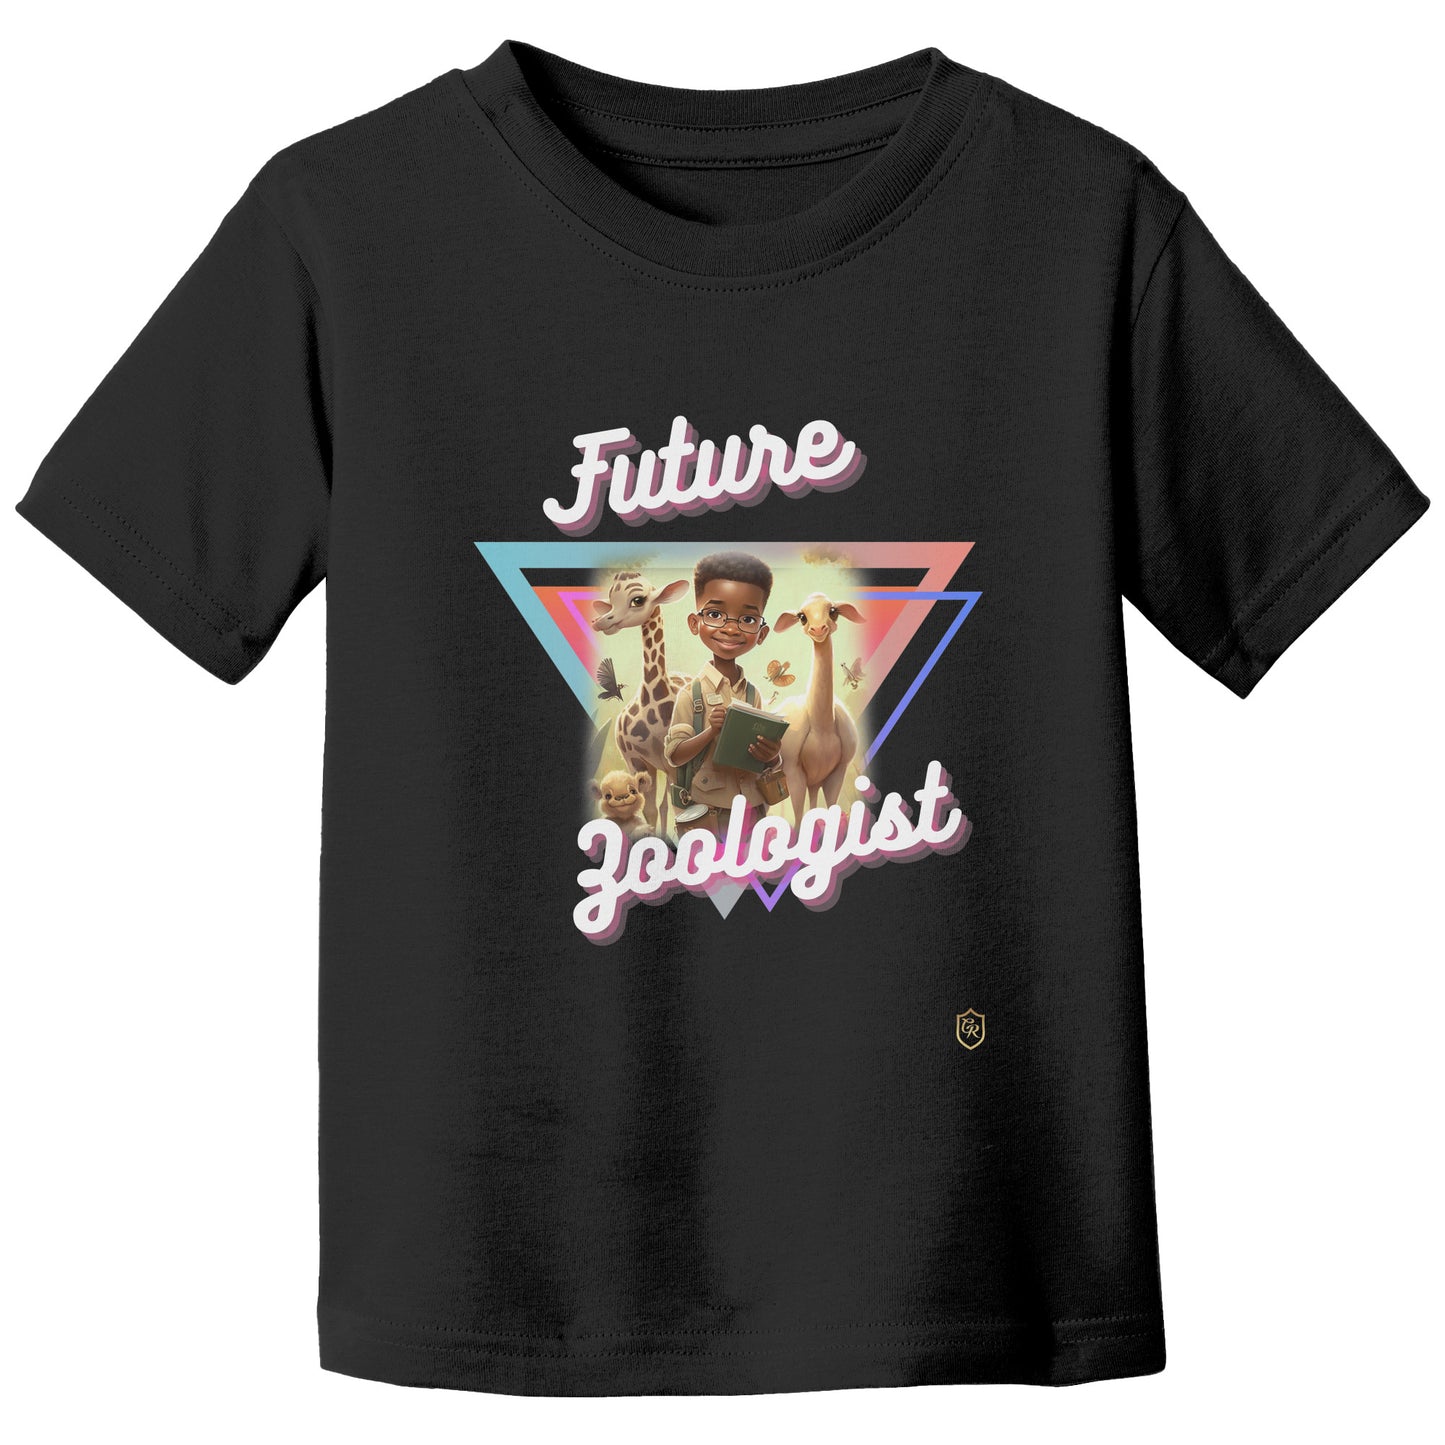 Boy's Future Zoologist T-shirt